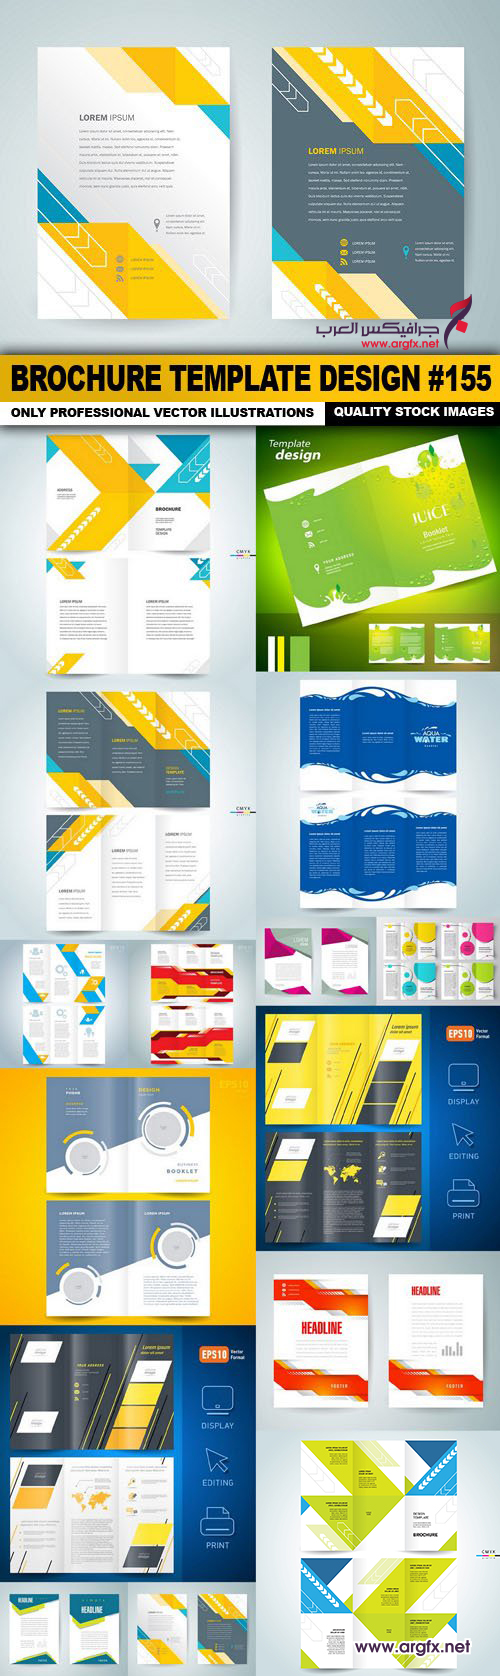  Brochure Template Design #155 - 15 Vector